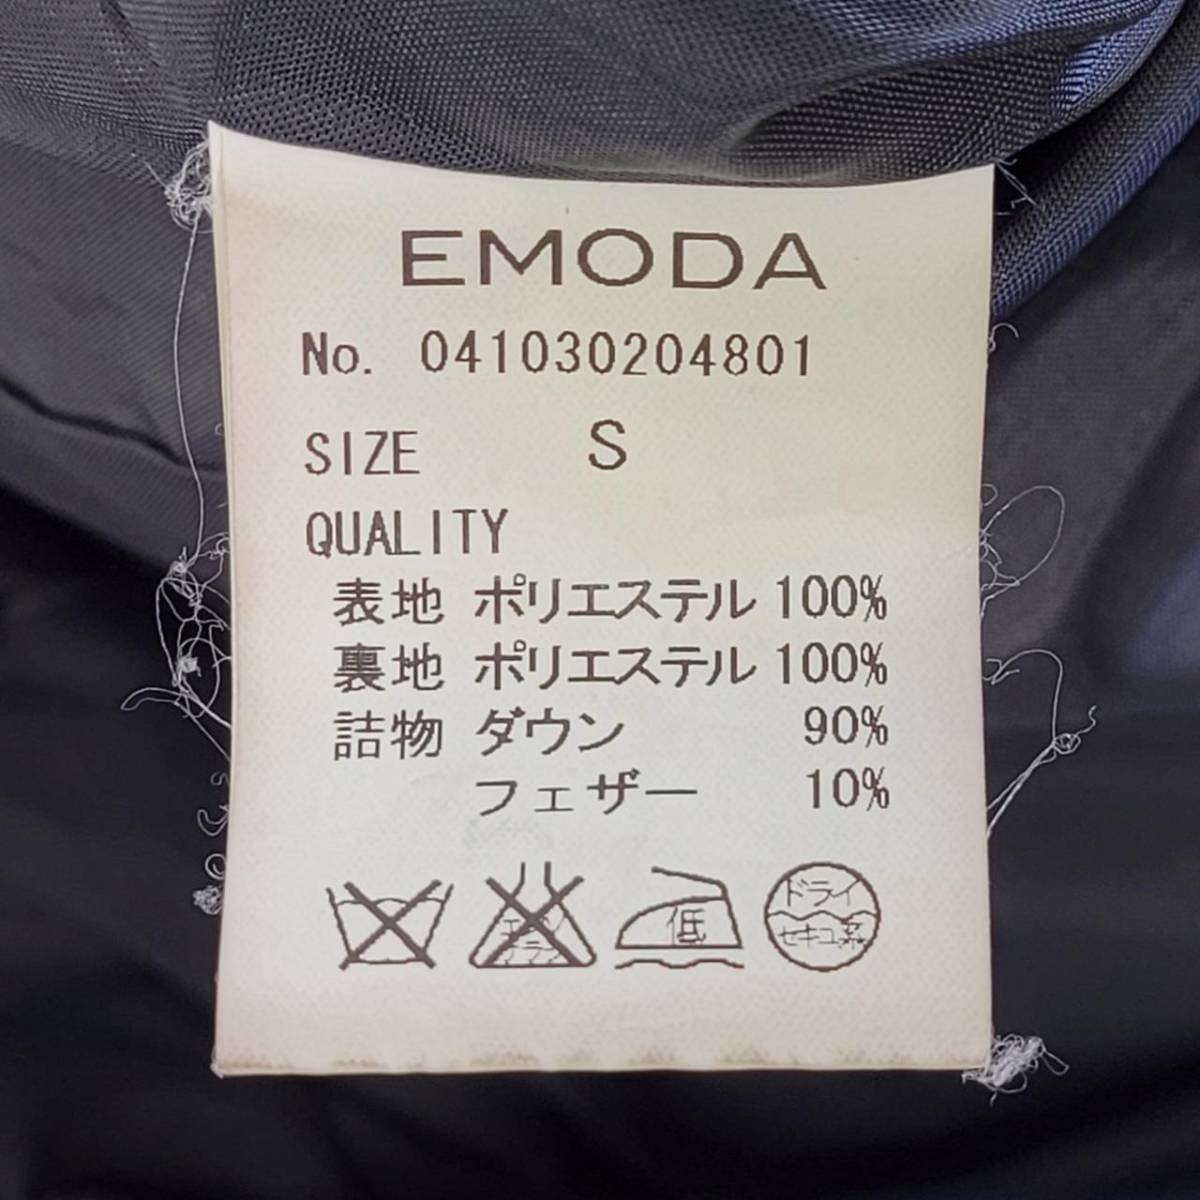 【20163】 EMODA エモダ ダウンジャケット S 黒 ブラック ステッチ カジュアル ファスナー シンプル 無地 防寒